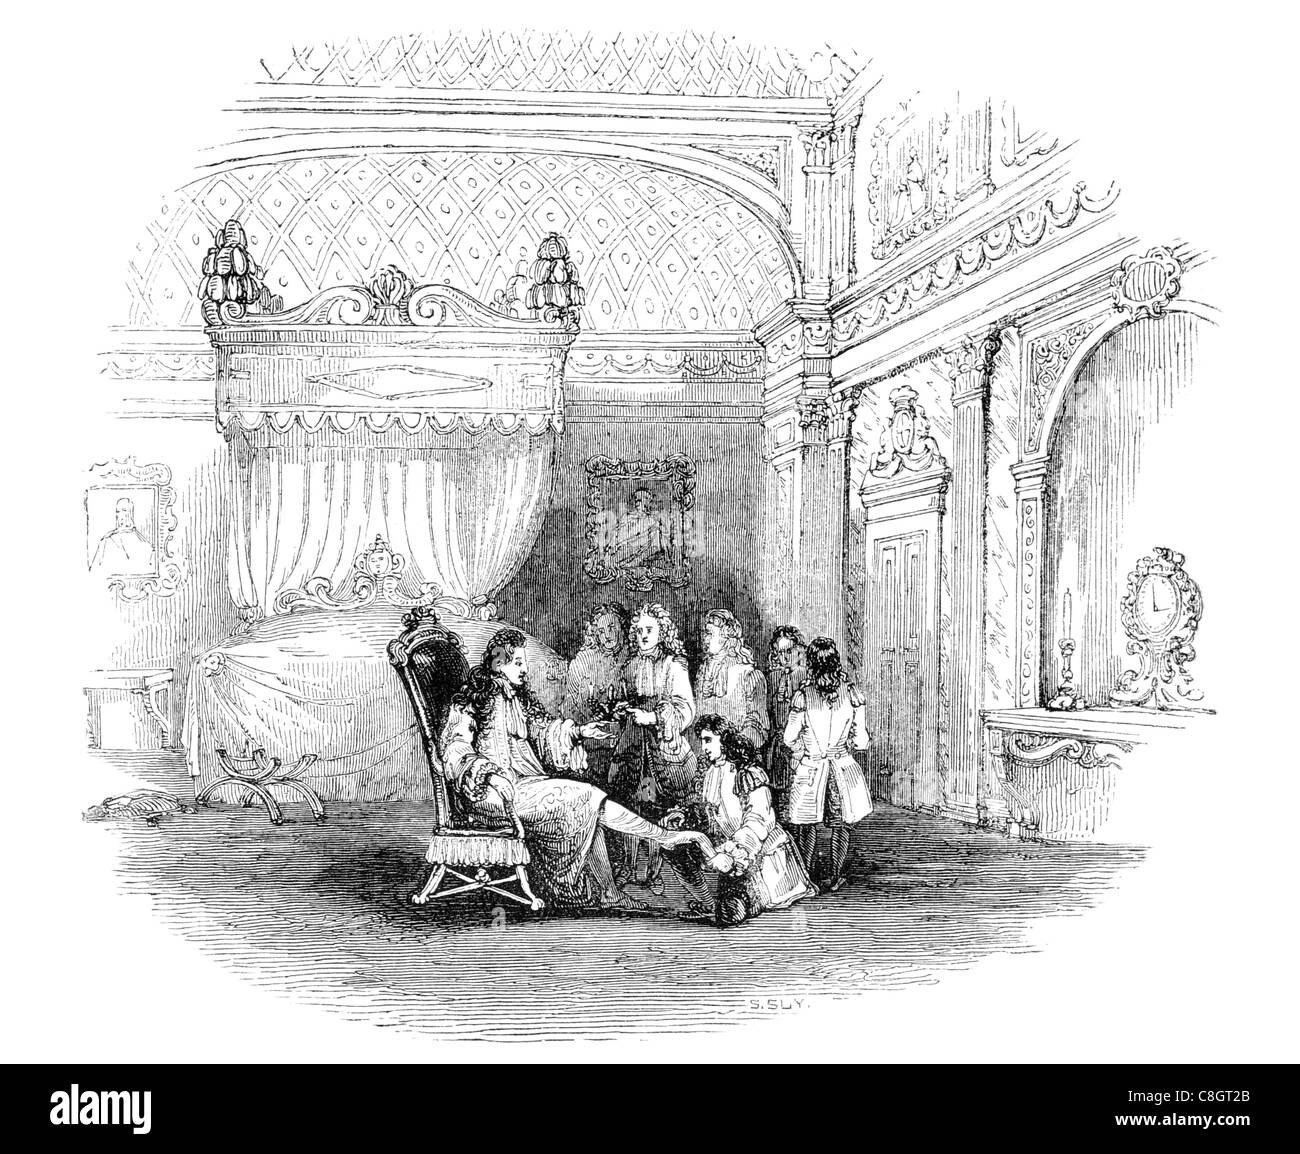 Meubles de chambre à coucher de Louis XIV king royal regal règle souveraine impérial potentat empereur tête couronnée monarch Banque D'Images